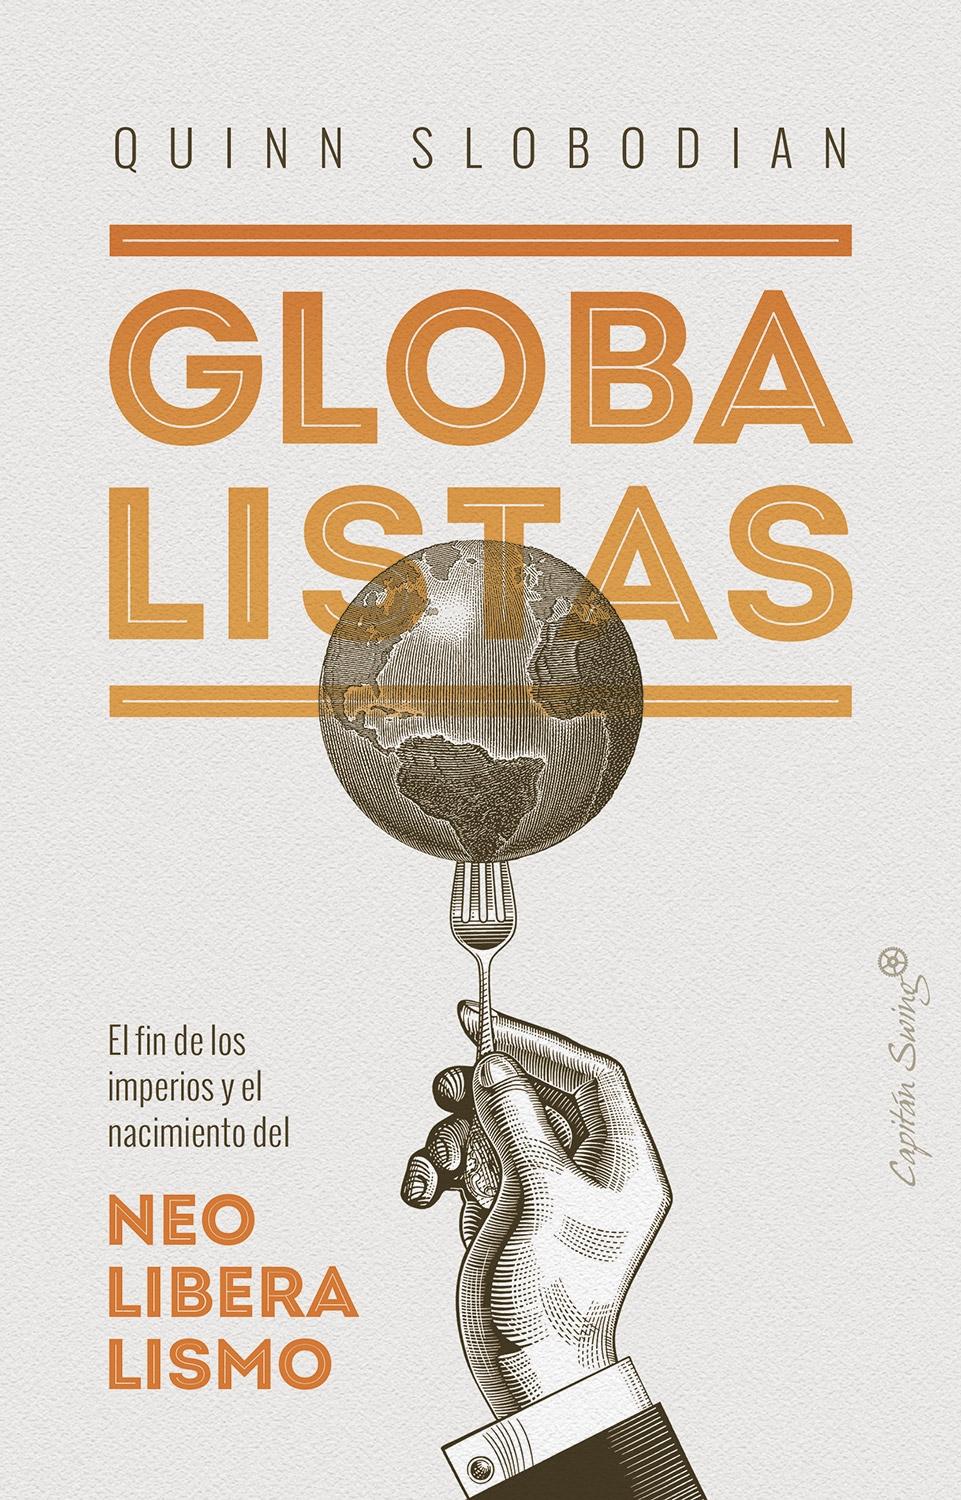 Globalistas "El fin de los imperios y el nacimiento del neoliberalismo". 